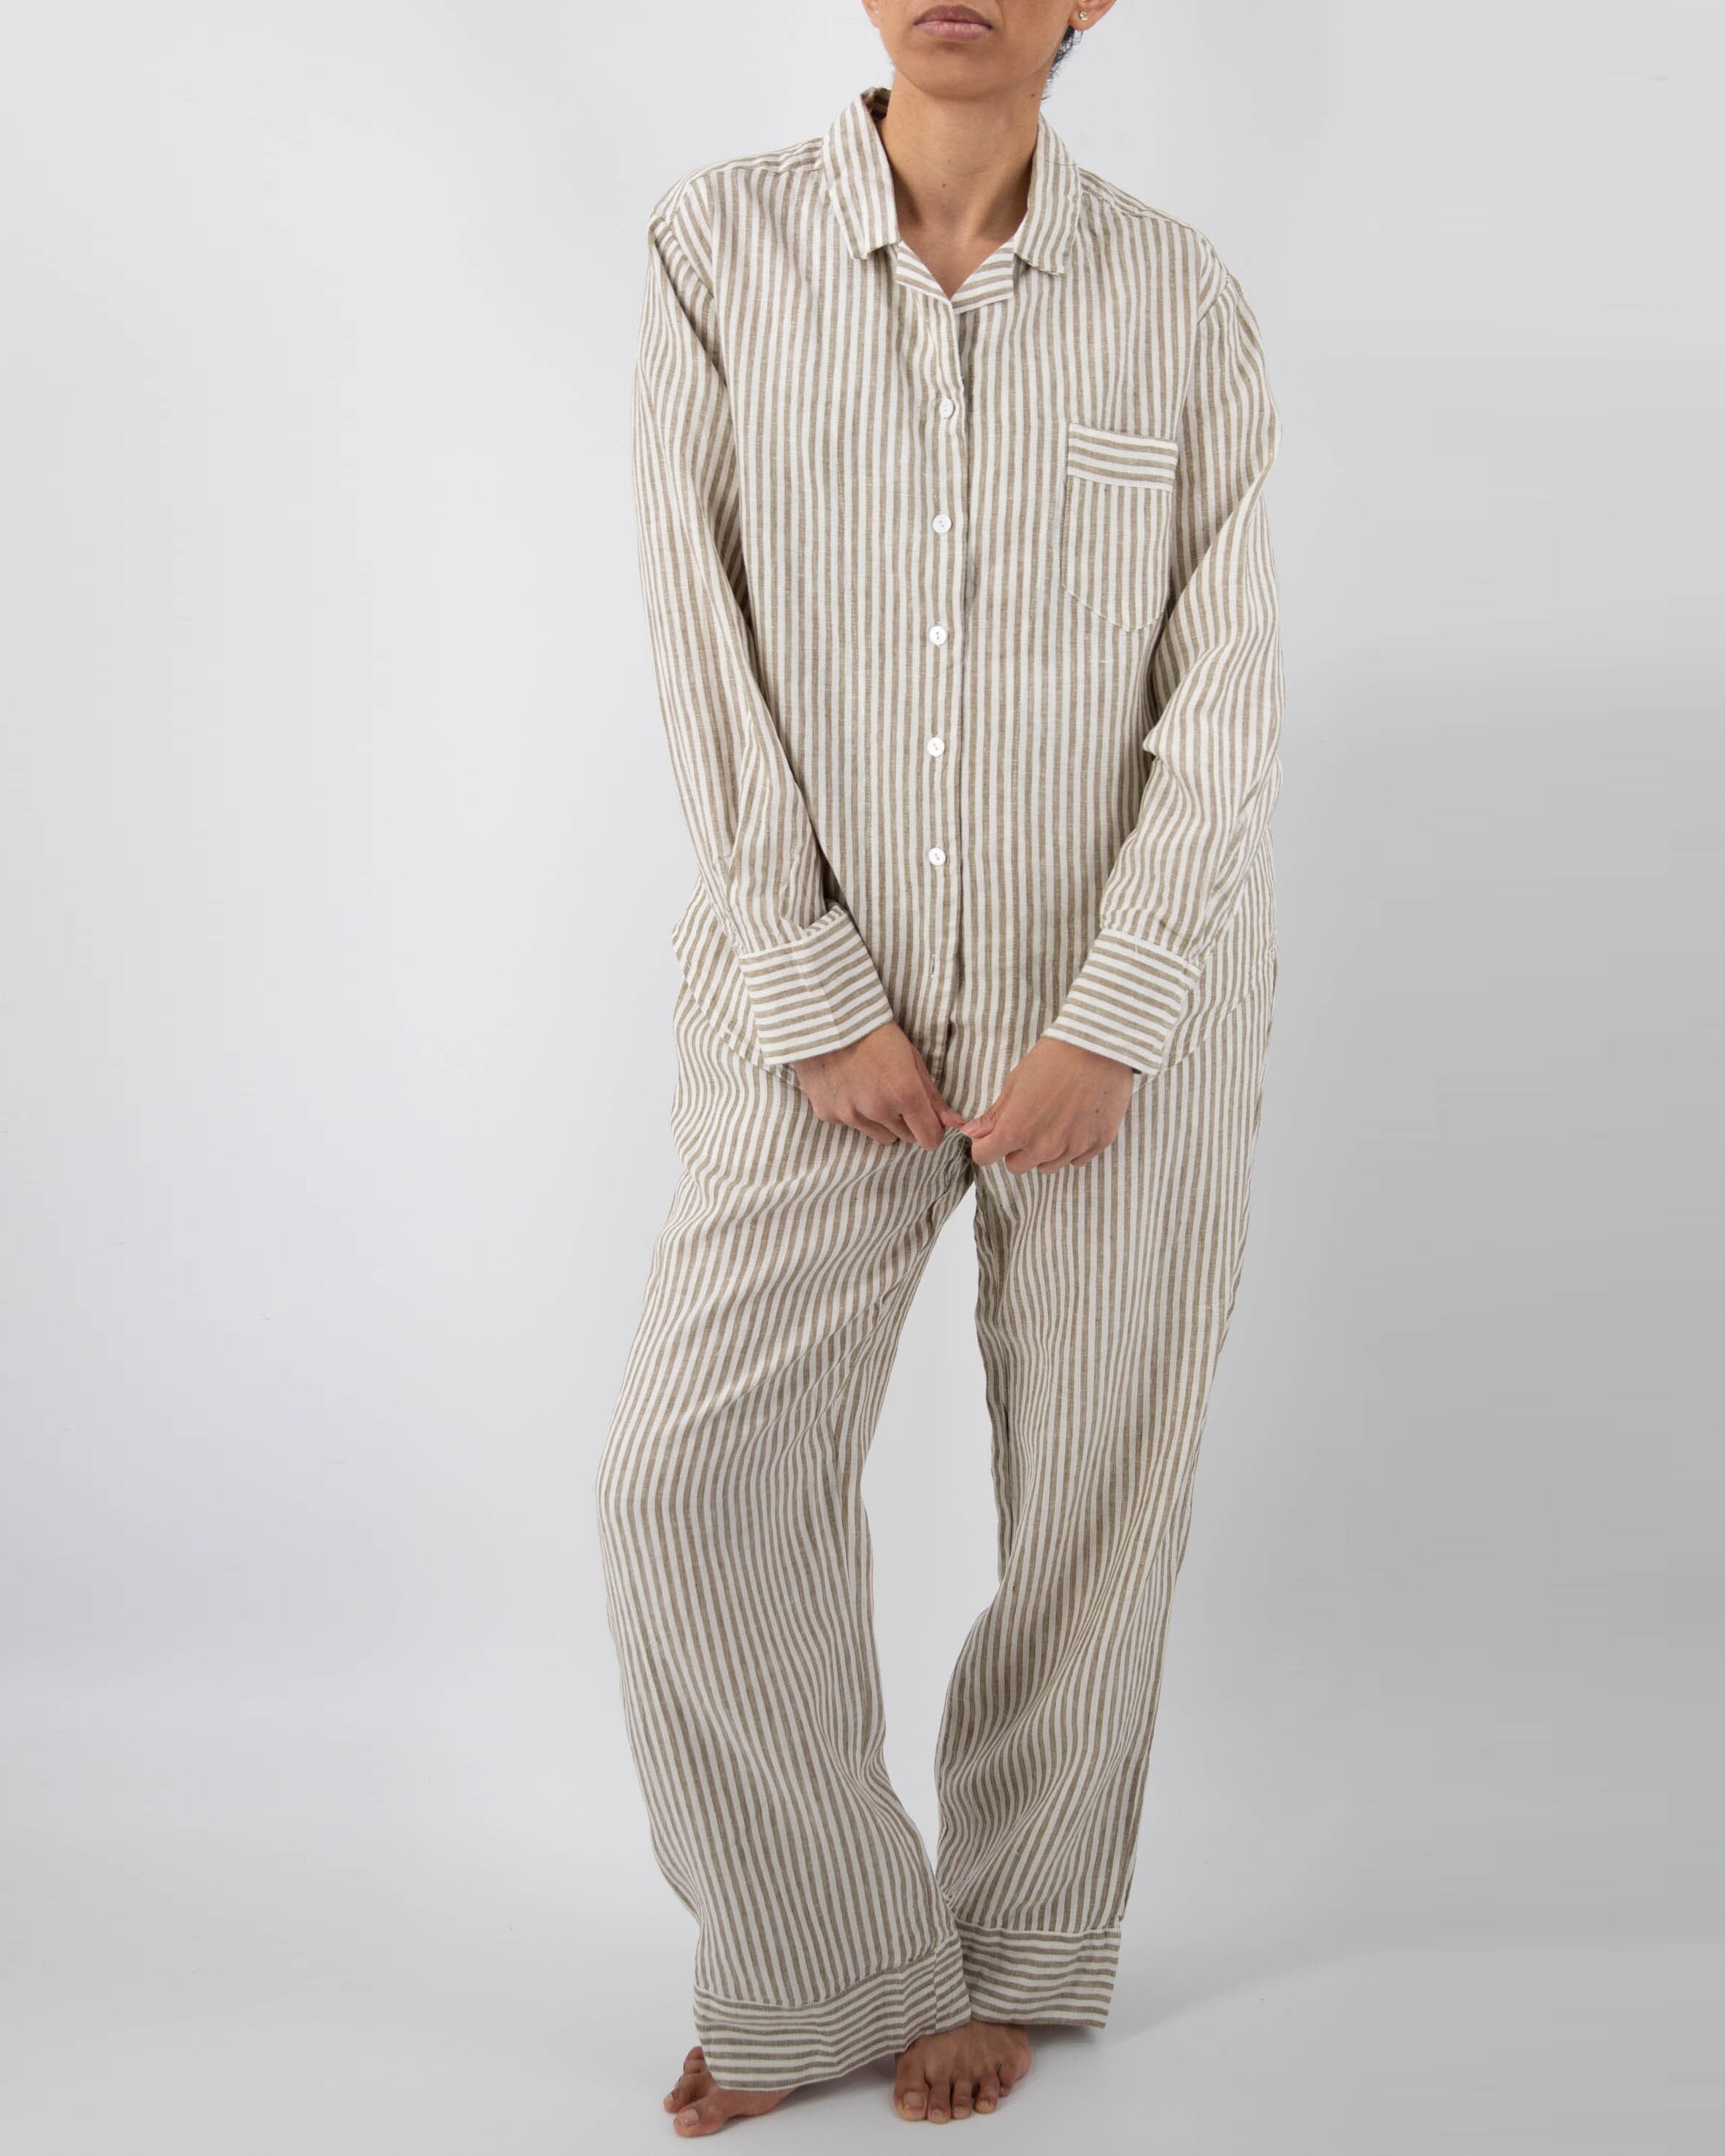 Kleding Gender-neutrale kleding volwassenen Pyjamas & Badjassen Pyjama Kerst pyjama set voor mannen Halflange Badjas natuurlijke eco. Pyjama Set Lange Broek Heren Linnen Pyjama Badjas met lange mouwen en zak 